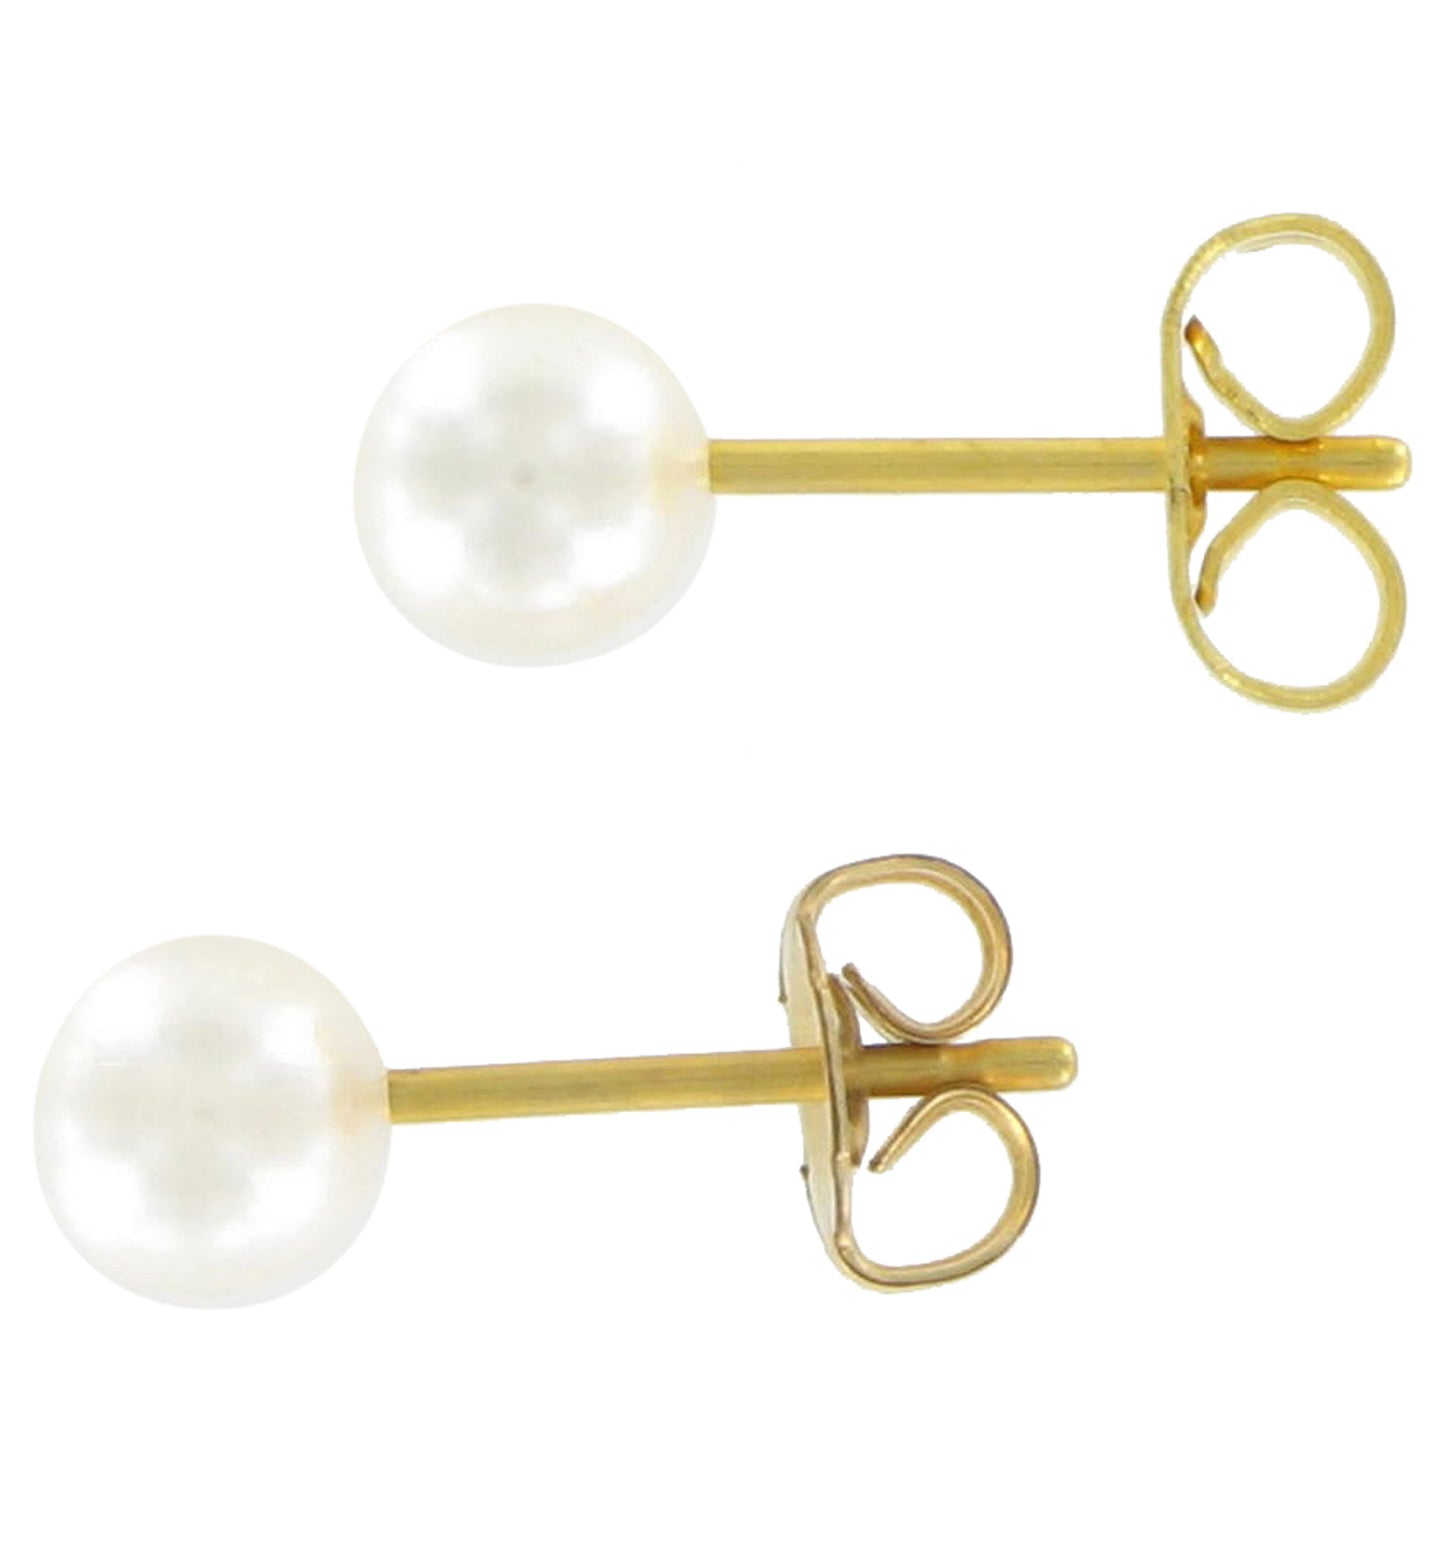 White Faux Pearl Gold Tone Stud Pierced Earrings  6mm